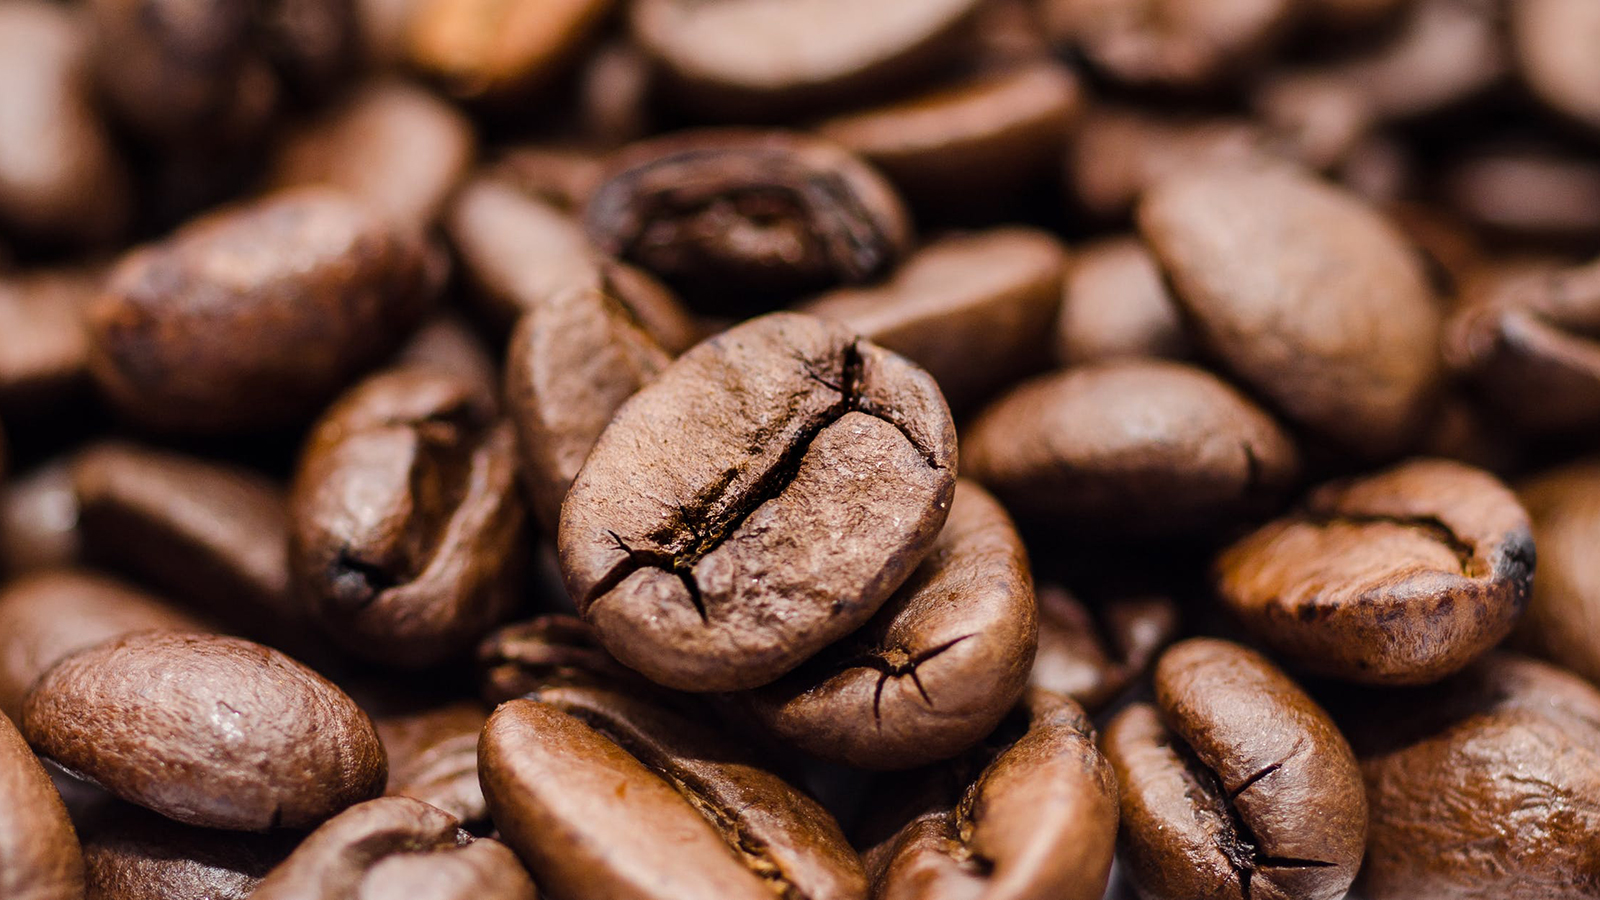 ‪القهوة العربية الزكية من عادات الأردنيين الموروثة تؤكد كرم الضيافة وأصالة التقاليد تماما كما في الدول العربية‬ (بيكسيلز)